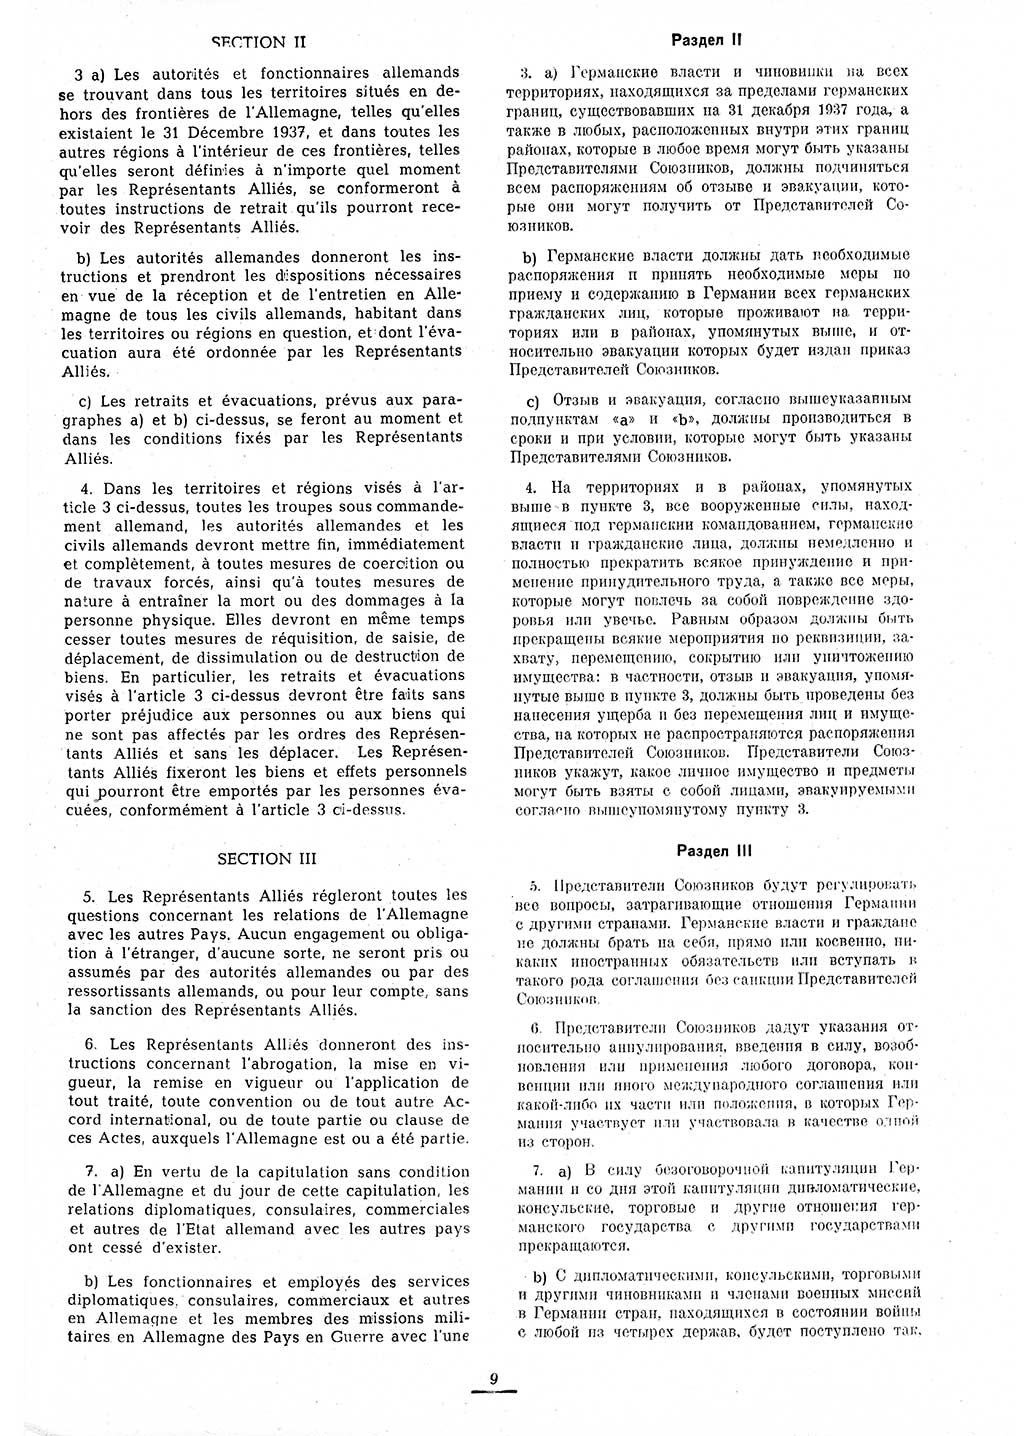 Amtsblatt des Kontrollrats (ABlKR) in Deutschland 1945, Seite 9/1 (ABlKR Dtl. 1945, S. 9/1)